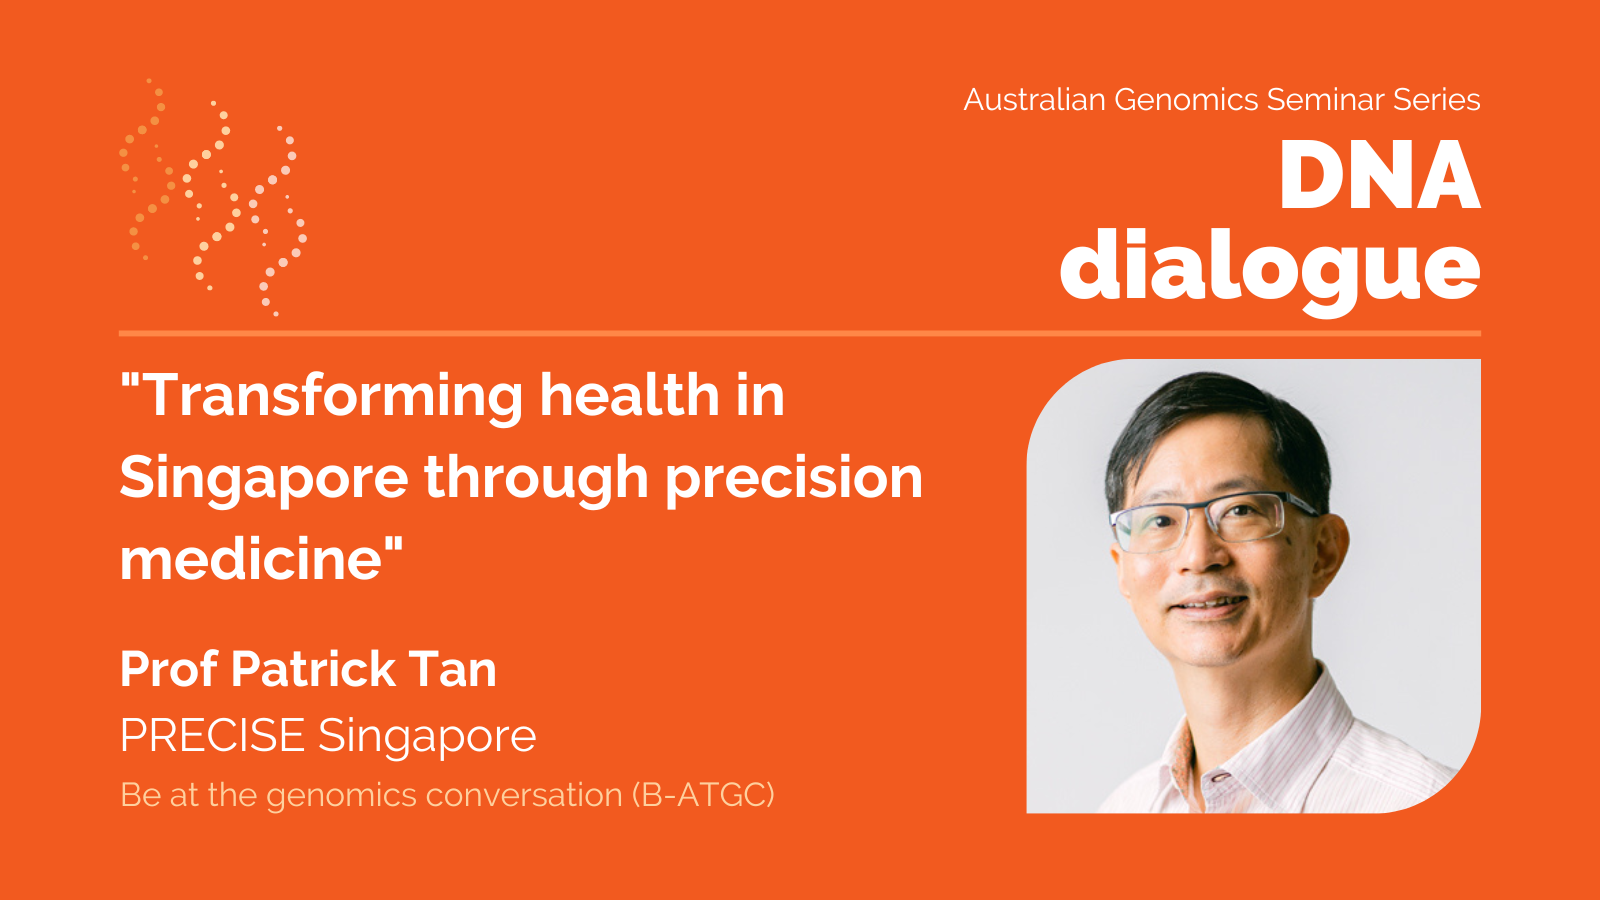 DNA dialogue seminar with Prof Patrick Tan